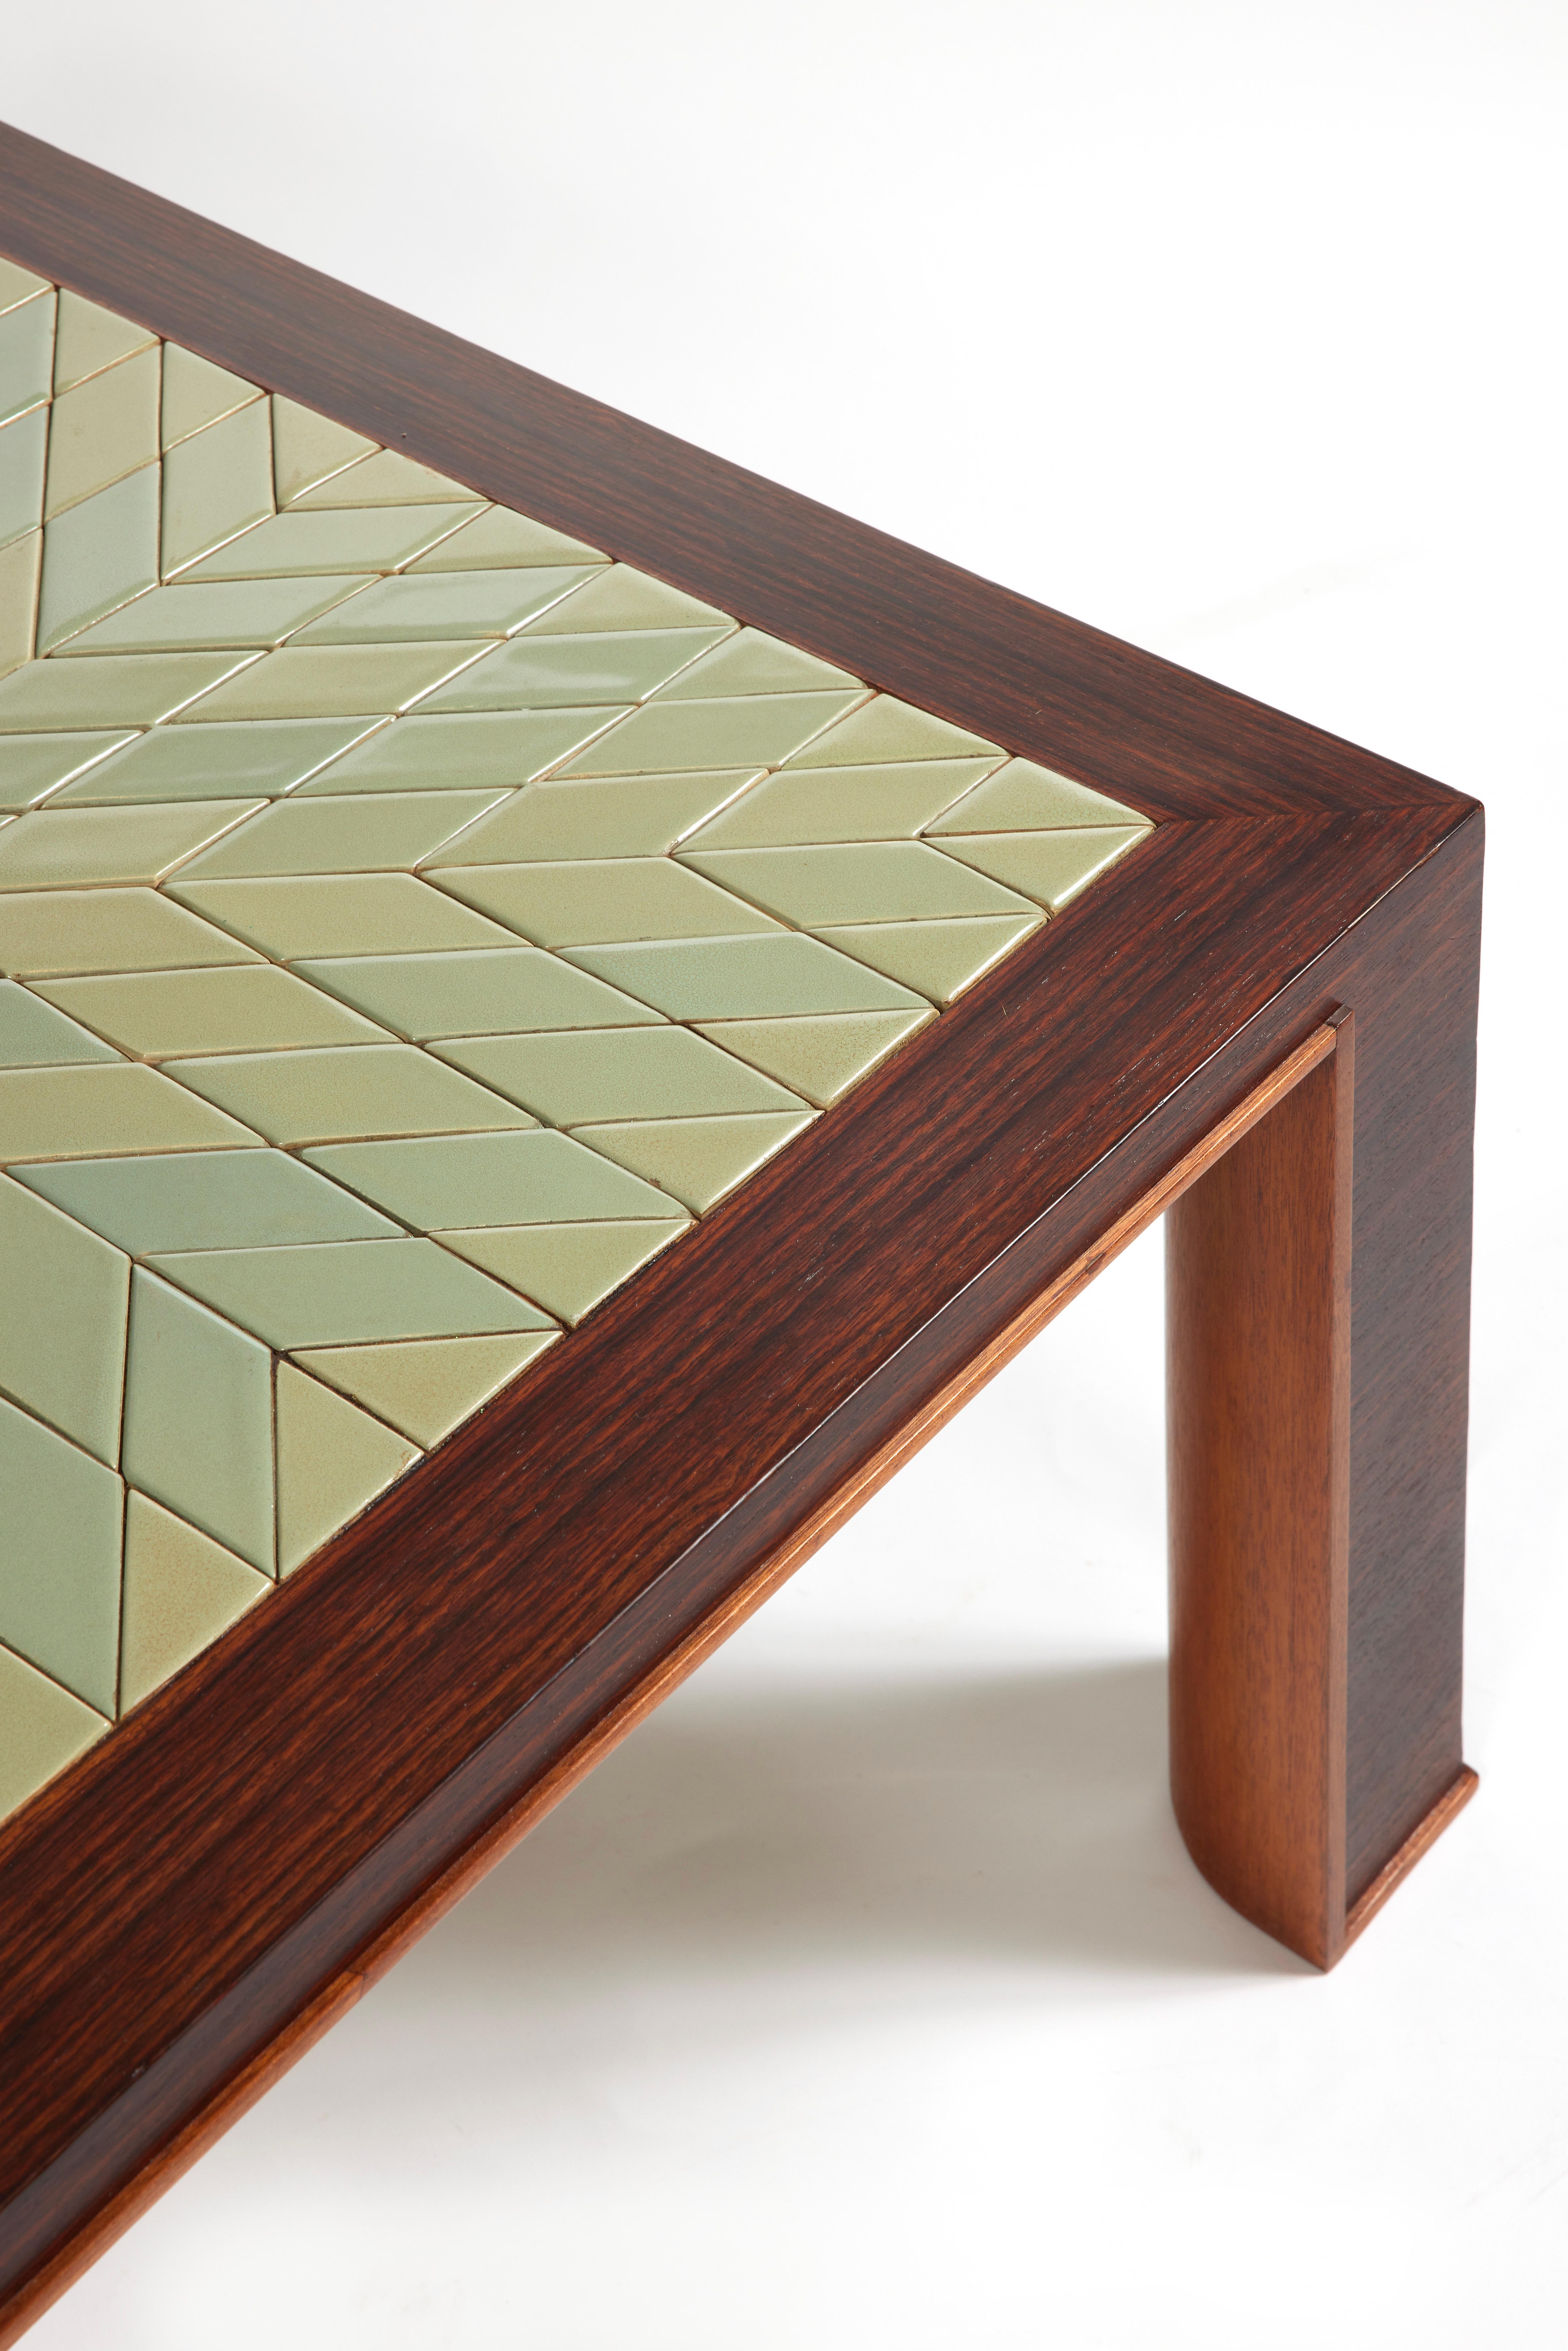 Table basse en placage de bois de rose avec plateau carré incorporant des carreaux de céramique émaillés verts avec un motif d'étoiles rayonnantes.
Jambes d'angle avec jambe droite à l'extérieur et arrondie à l'intérieur soulignée par un petit